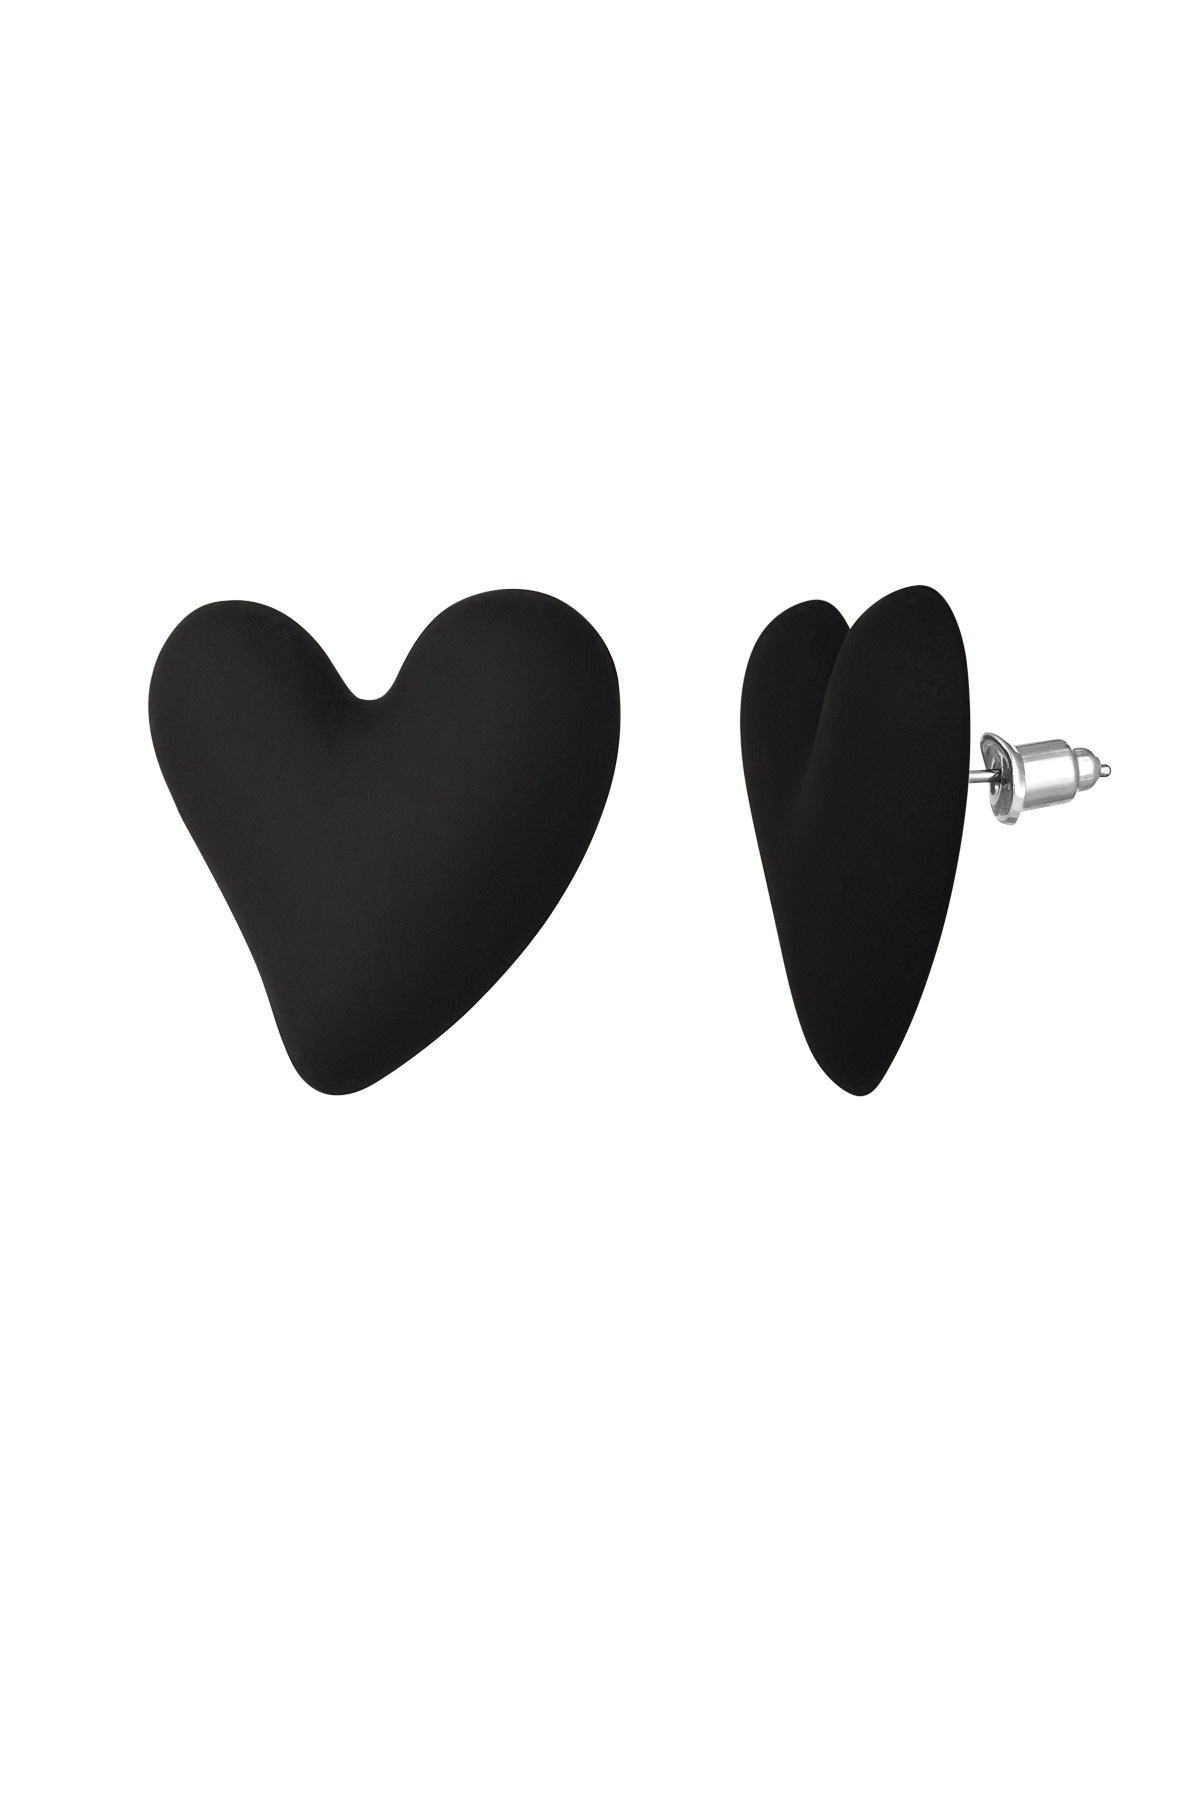 Colorful love earrings - black h5 